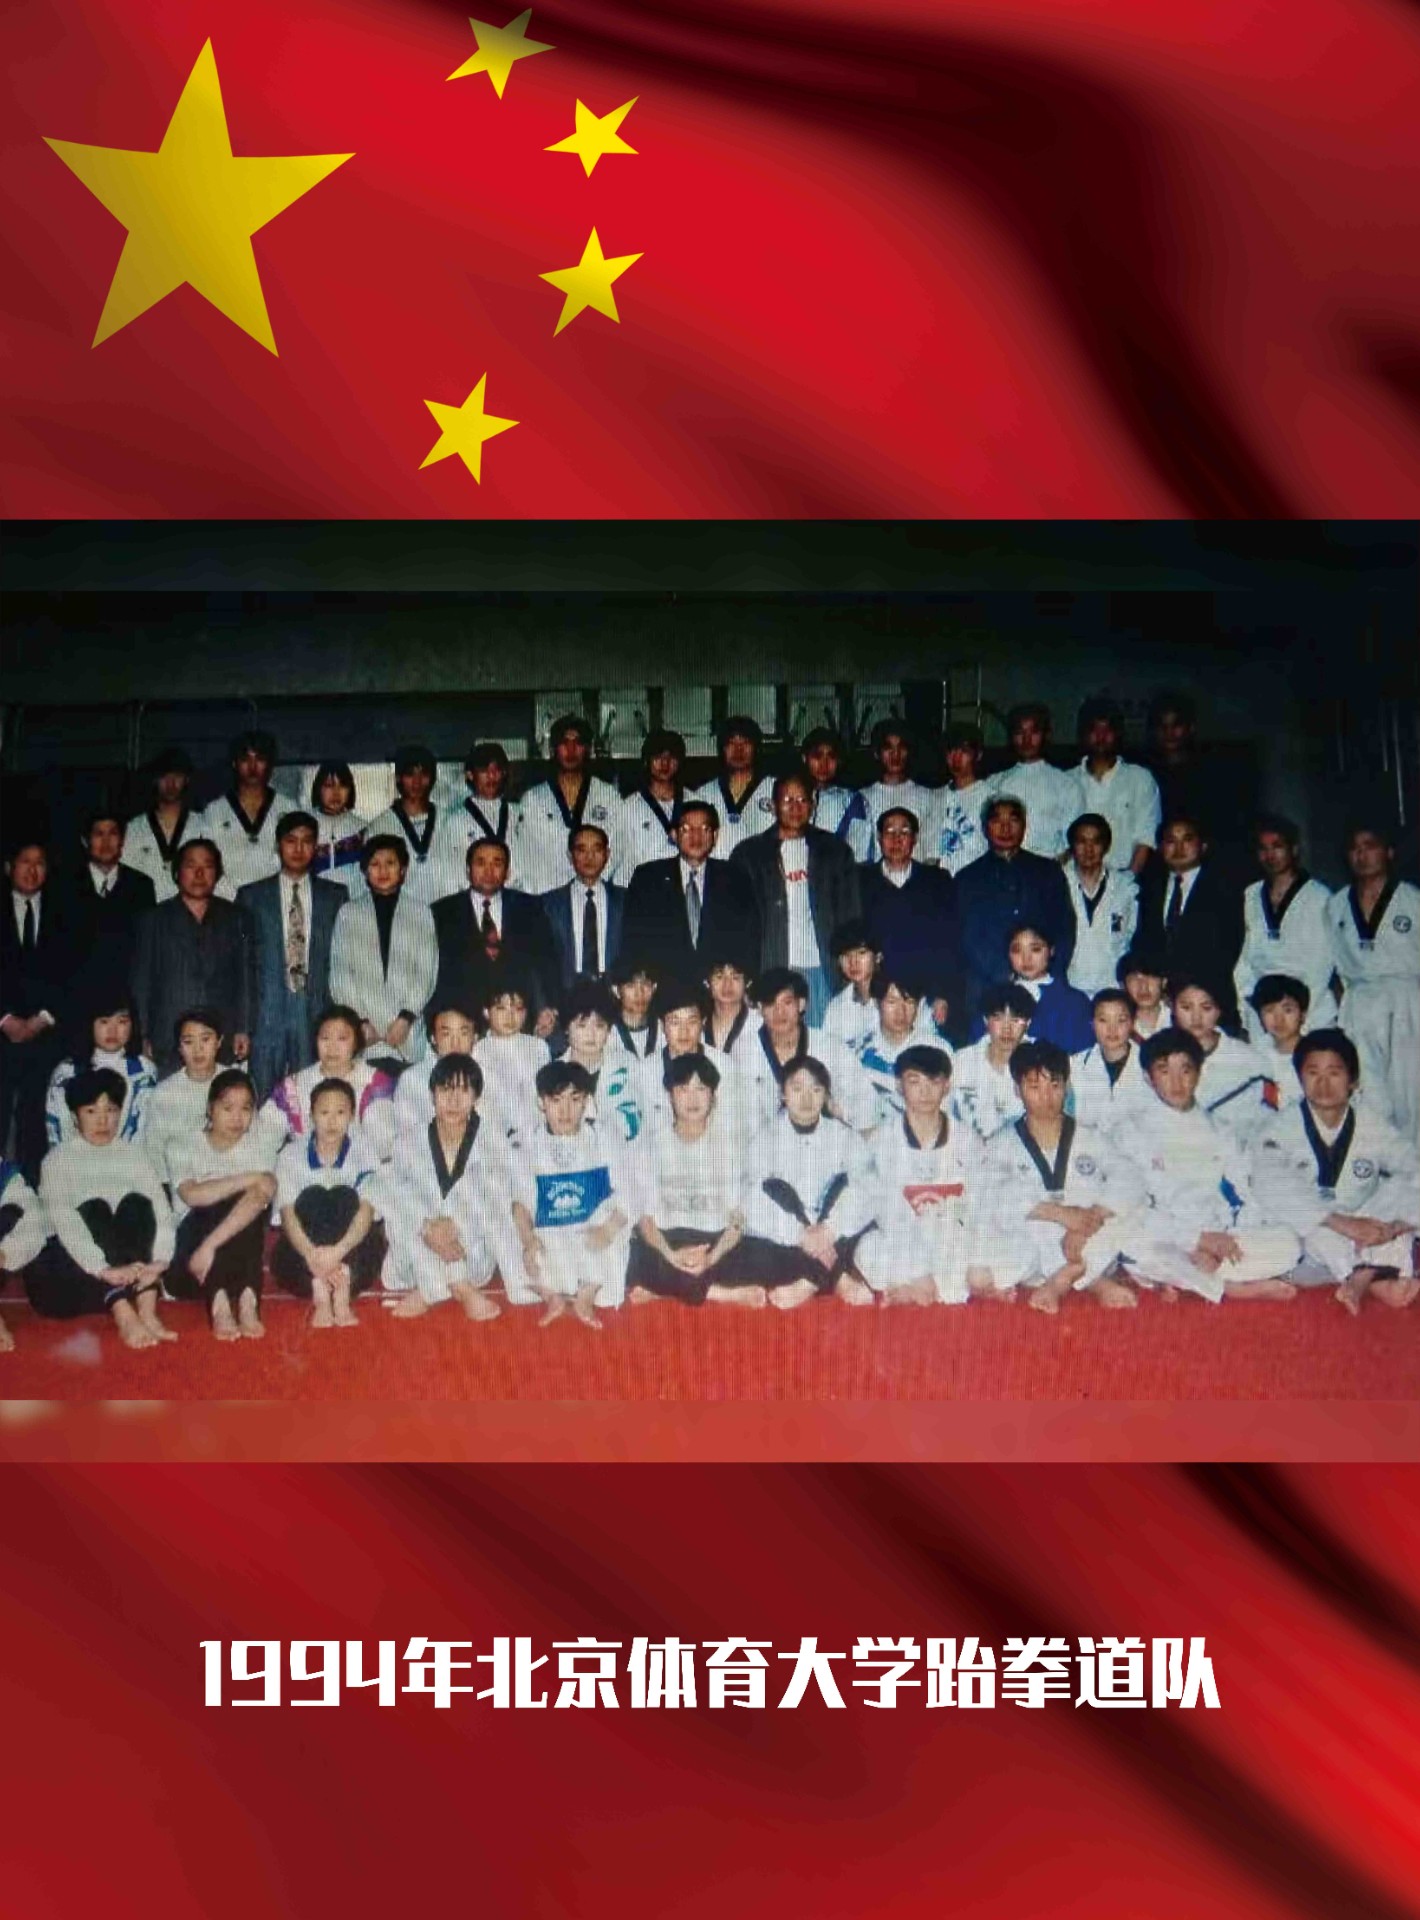 1994年北京体育大学跆拳道队